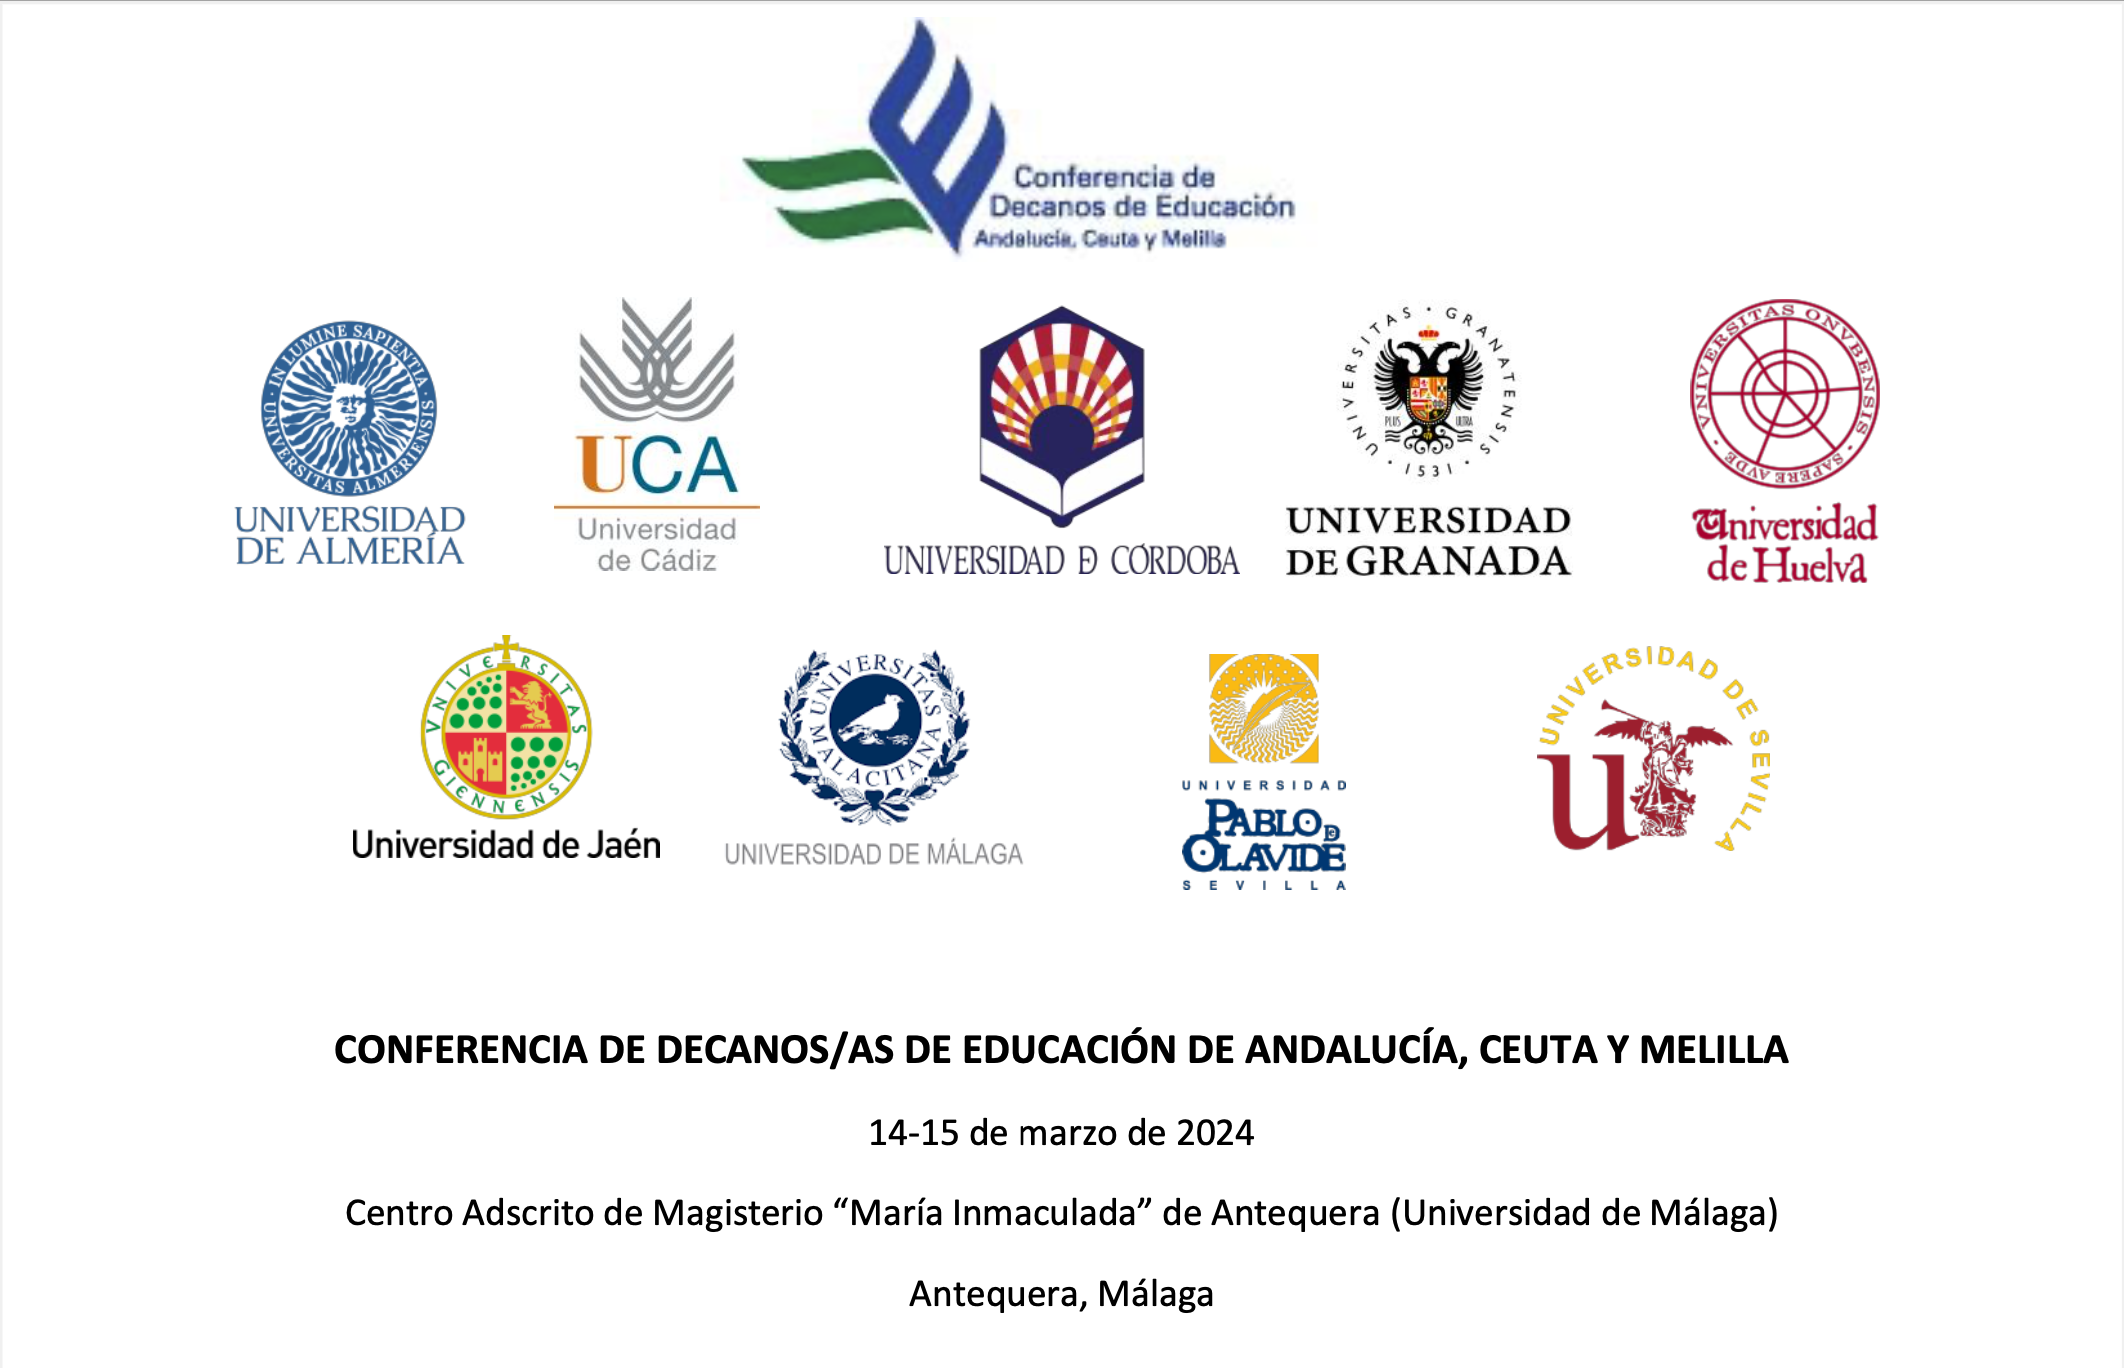 Lucía Herrera preside la próxima Conferencia de Decanos/as de Educación de Andalucía Ceuta y Melilla